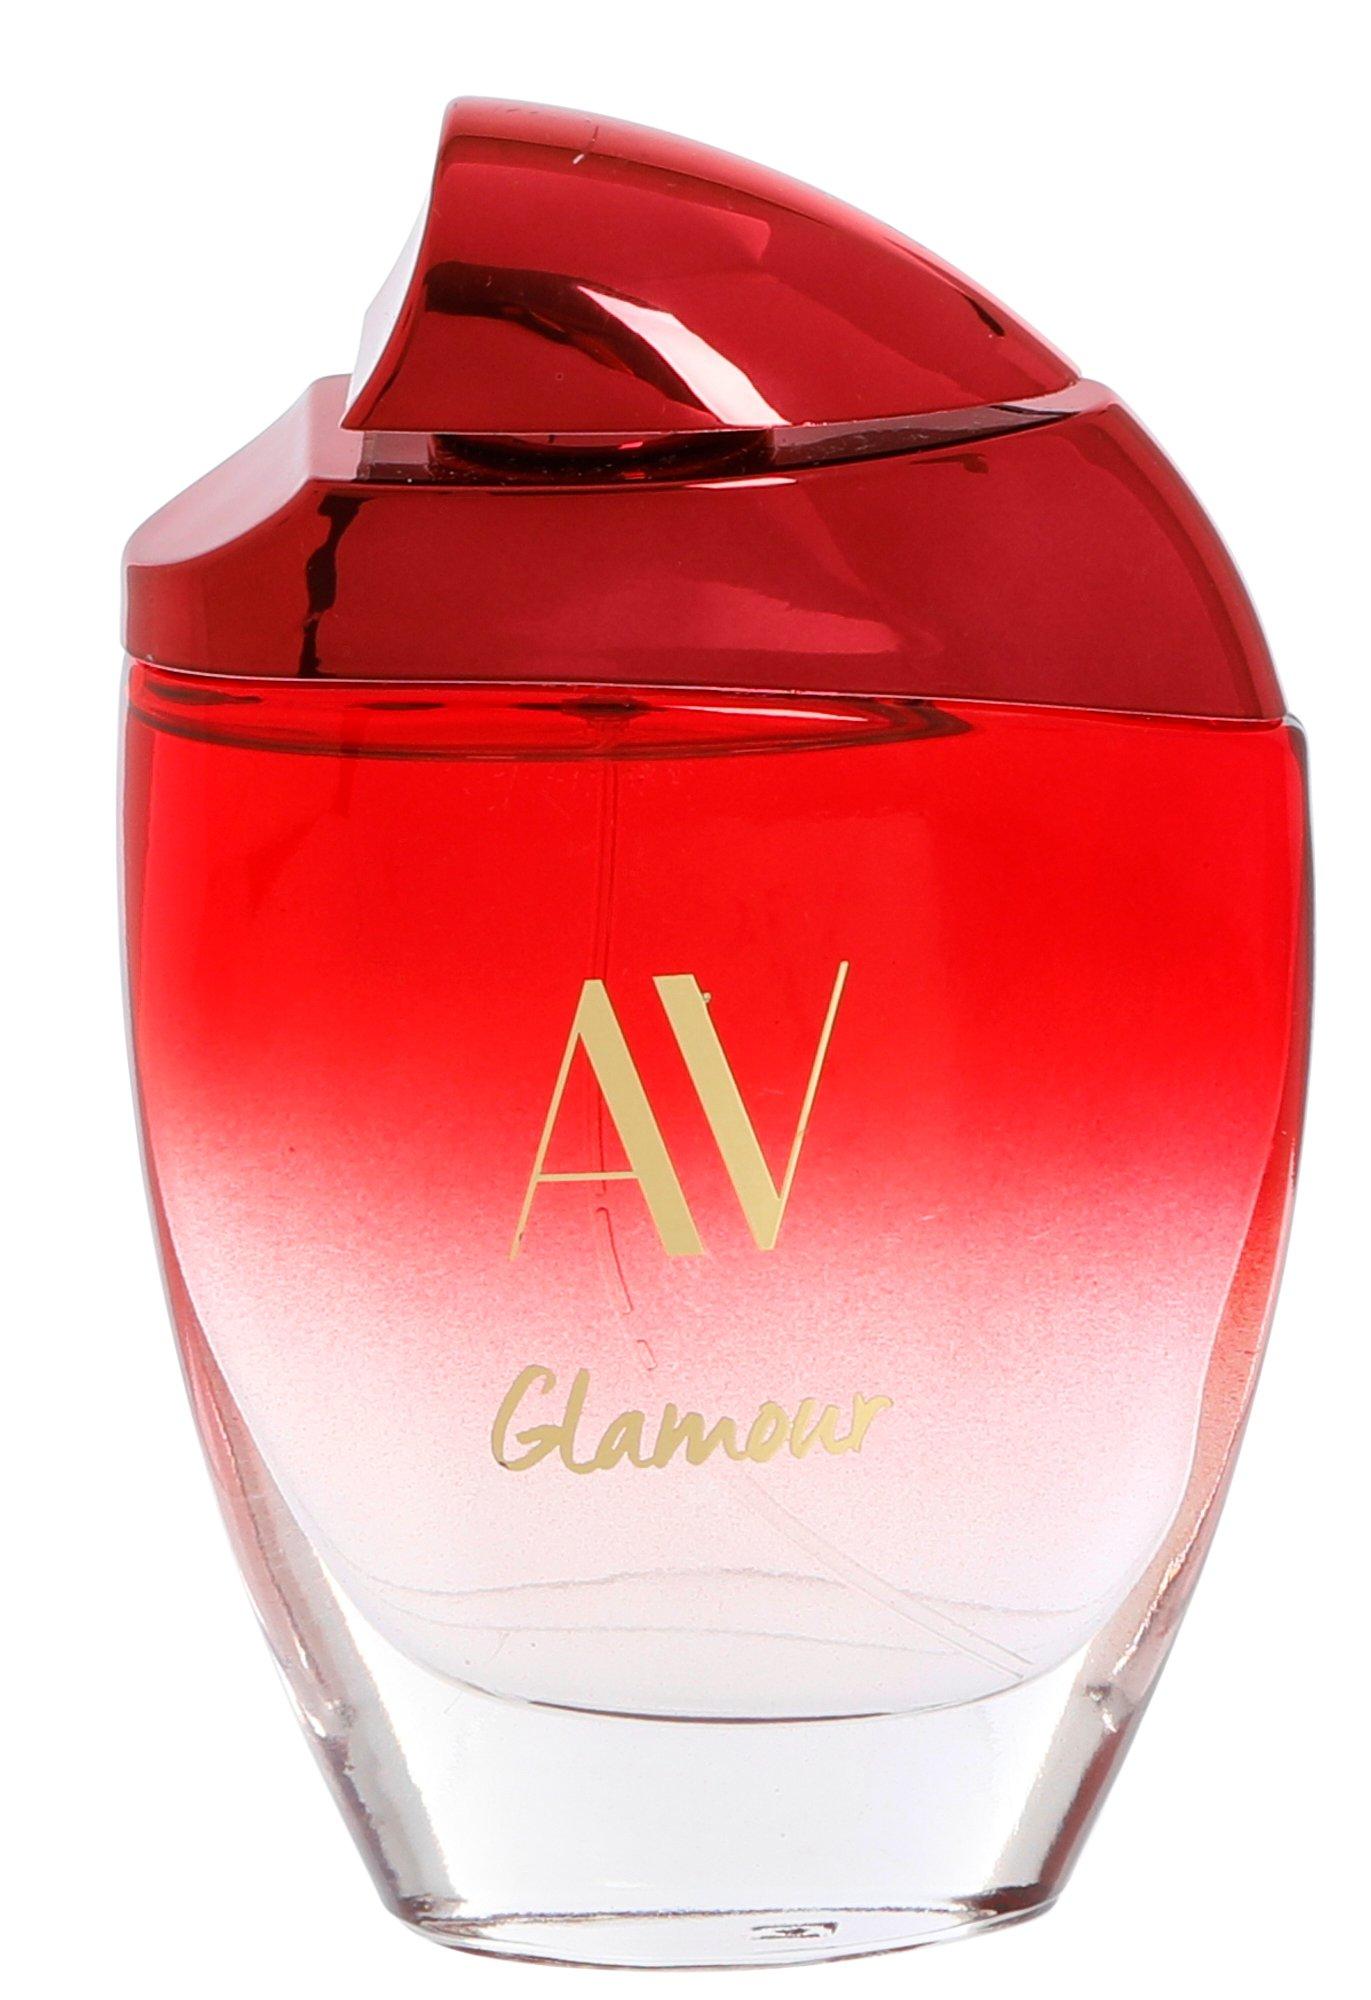 3 oz Glamour For Her Fragrance Spray